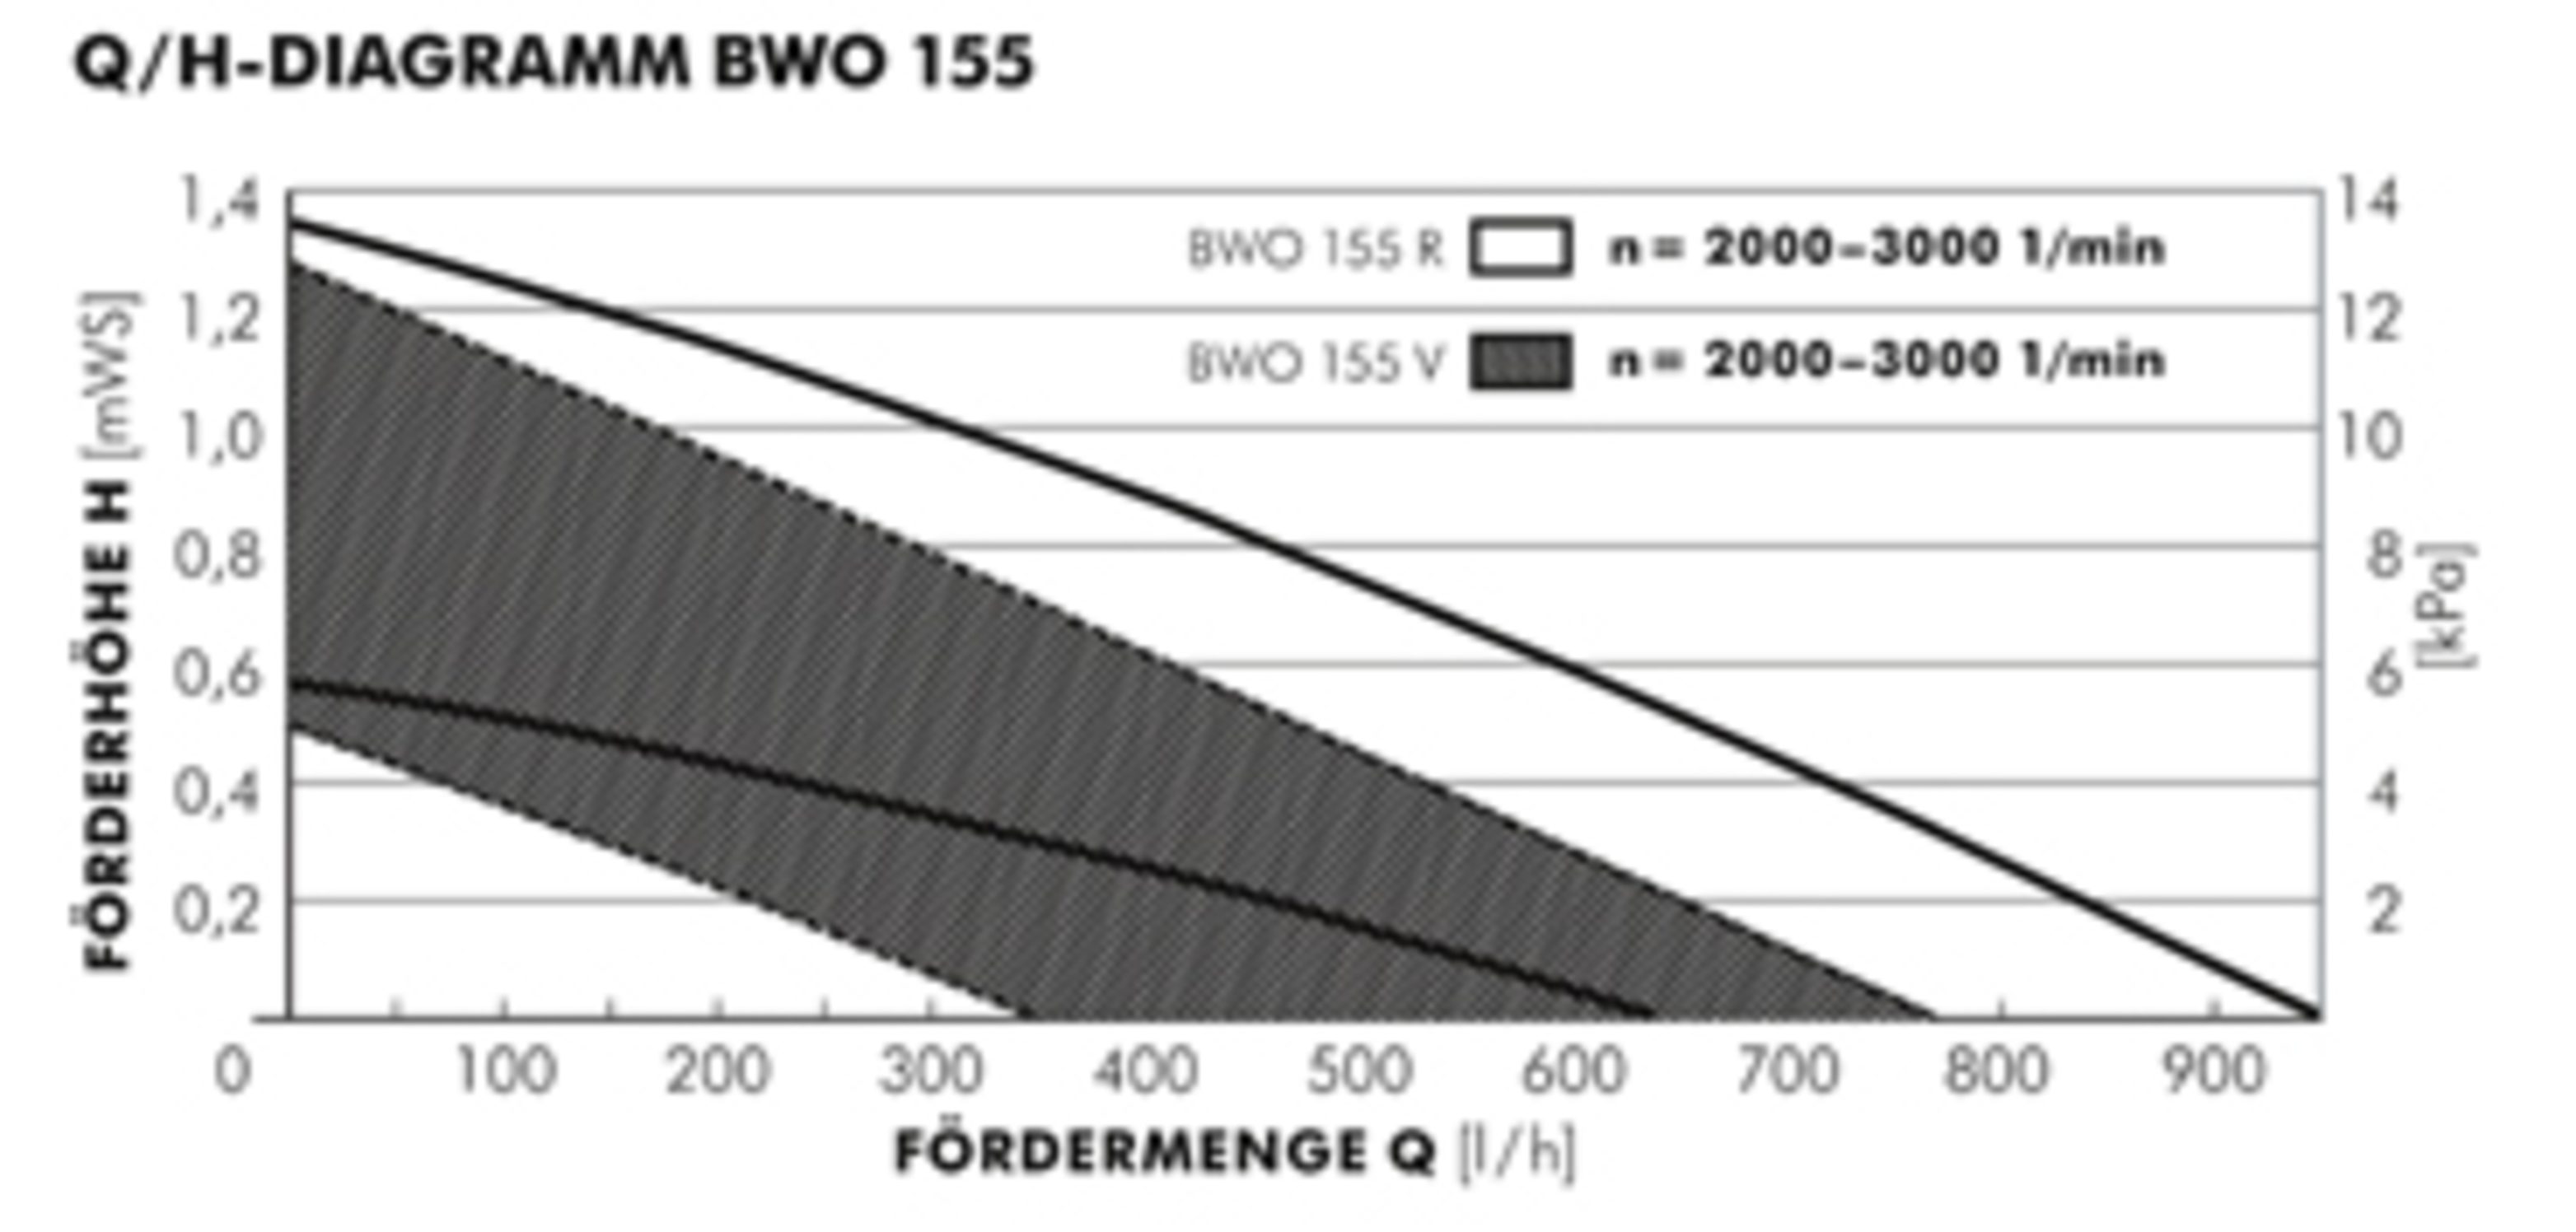 Vortex Brauchwasserpumpe BLUEONE BWO 155 V SL 433-111-041, Pumpe